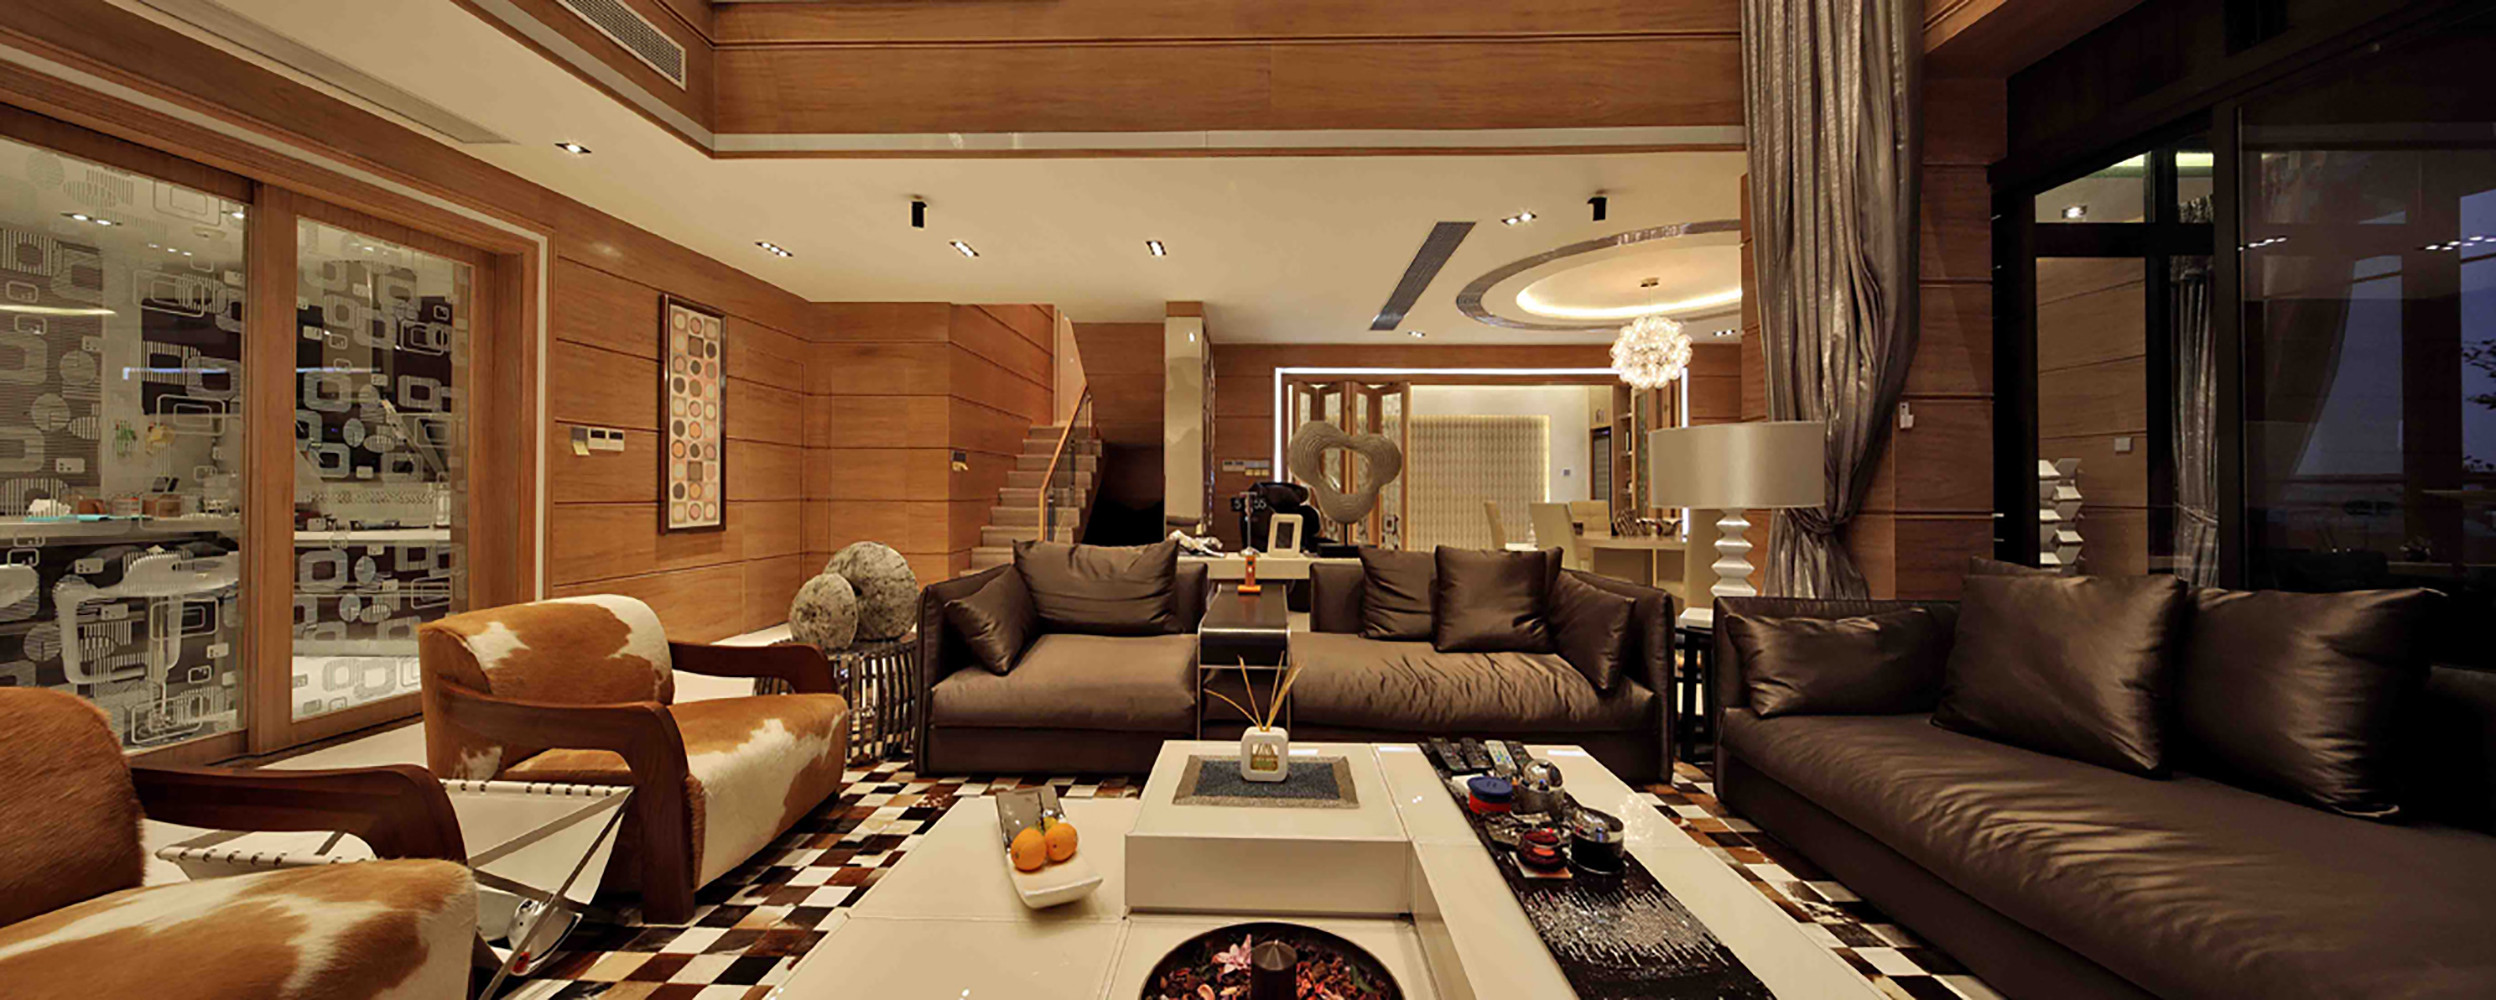 别墅装修,富裕型装修,140平米以上装修,客厅,现代简约风格,沙发,灰色